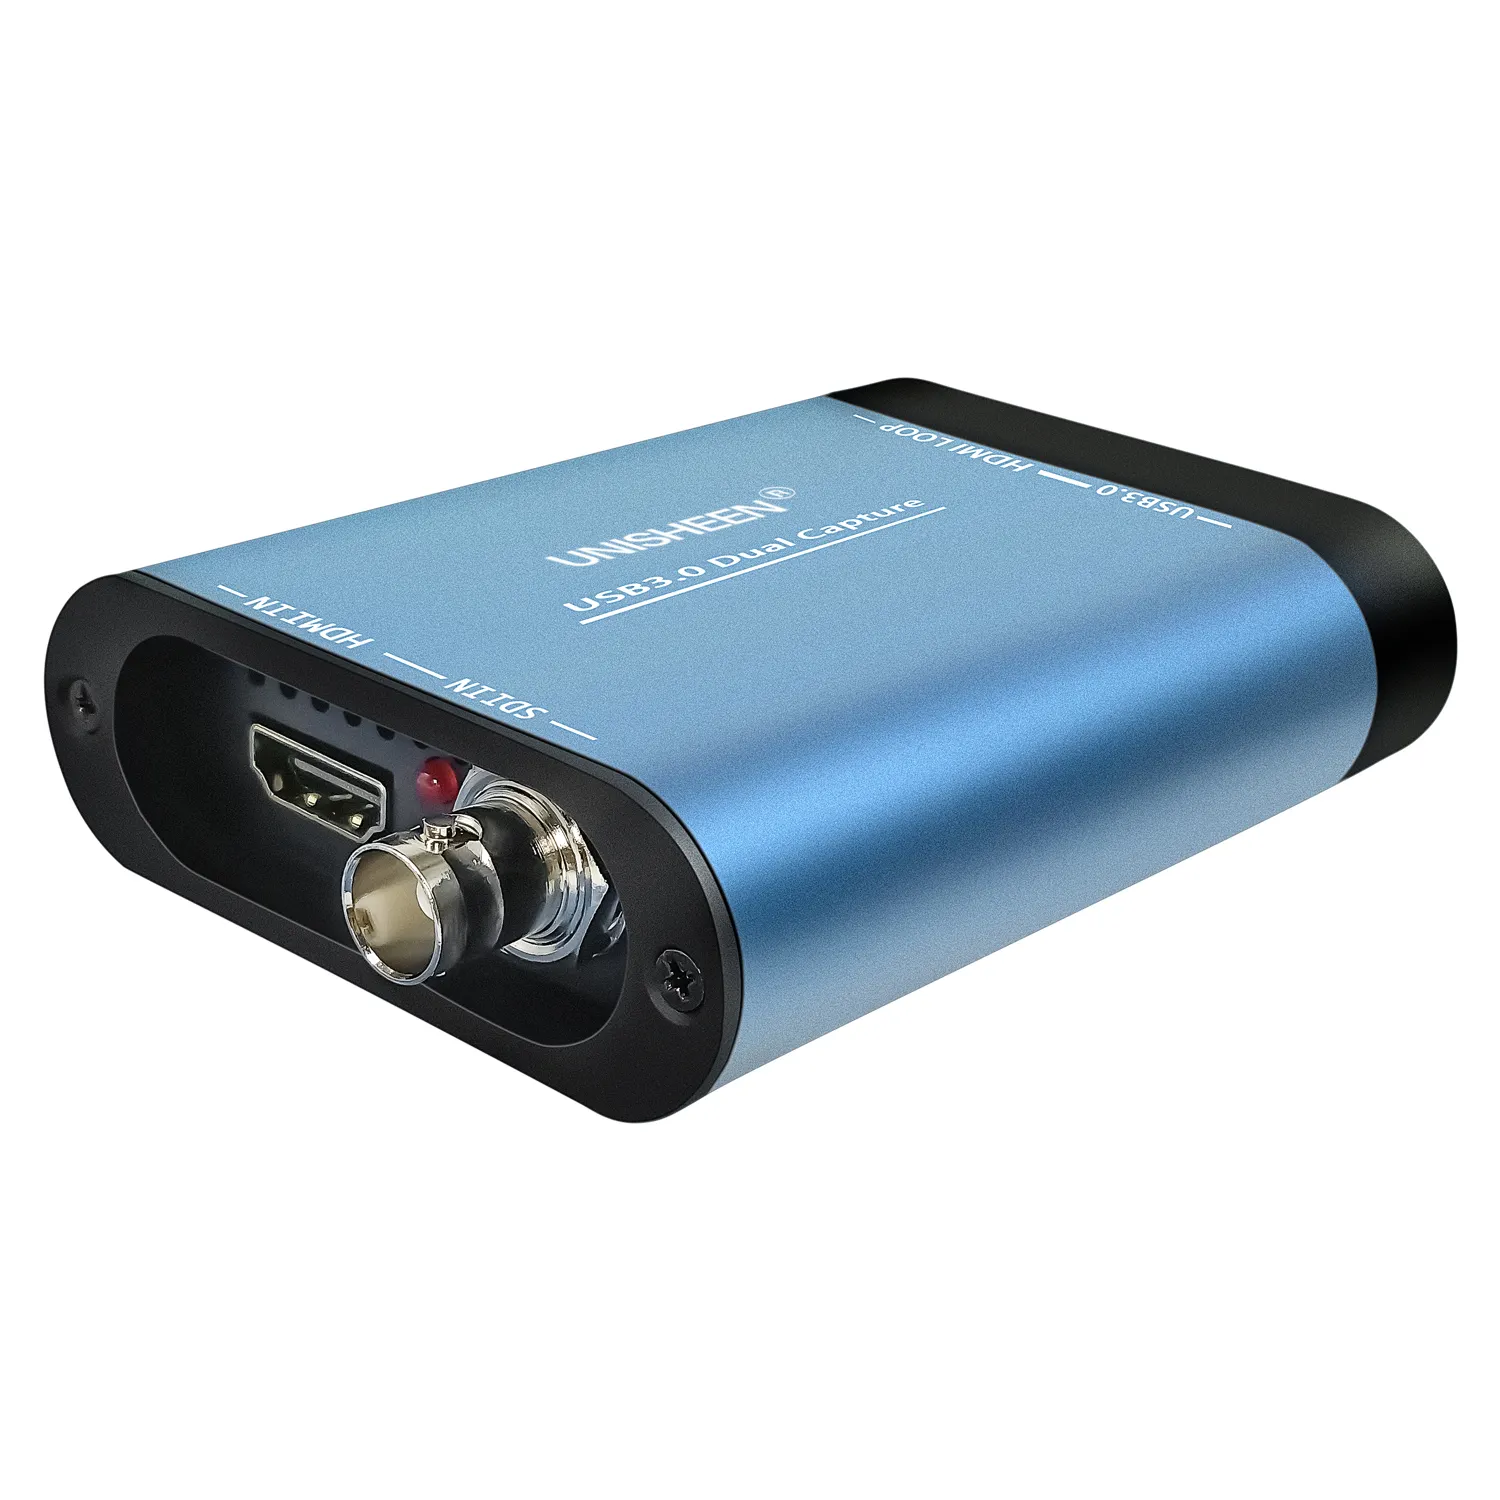 Unisheen trò chơi trực tuyến phát sóng trực tiếp 1080P OBS VMIX wirecast Xsplit USB3.0 60fps kép SDI HDMI video chụp thẻ hộp Grabber